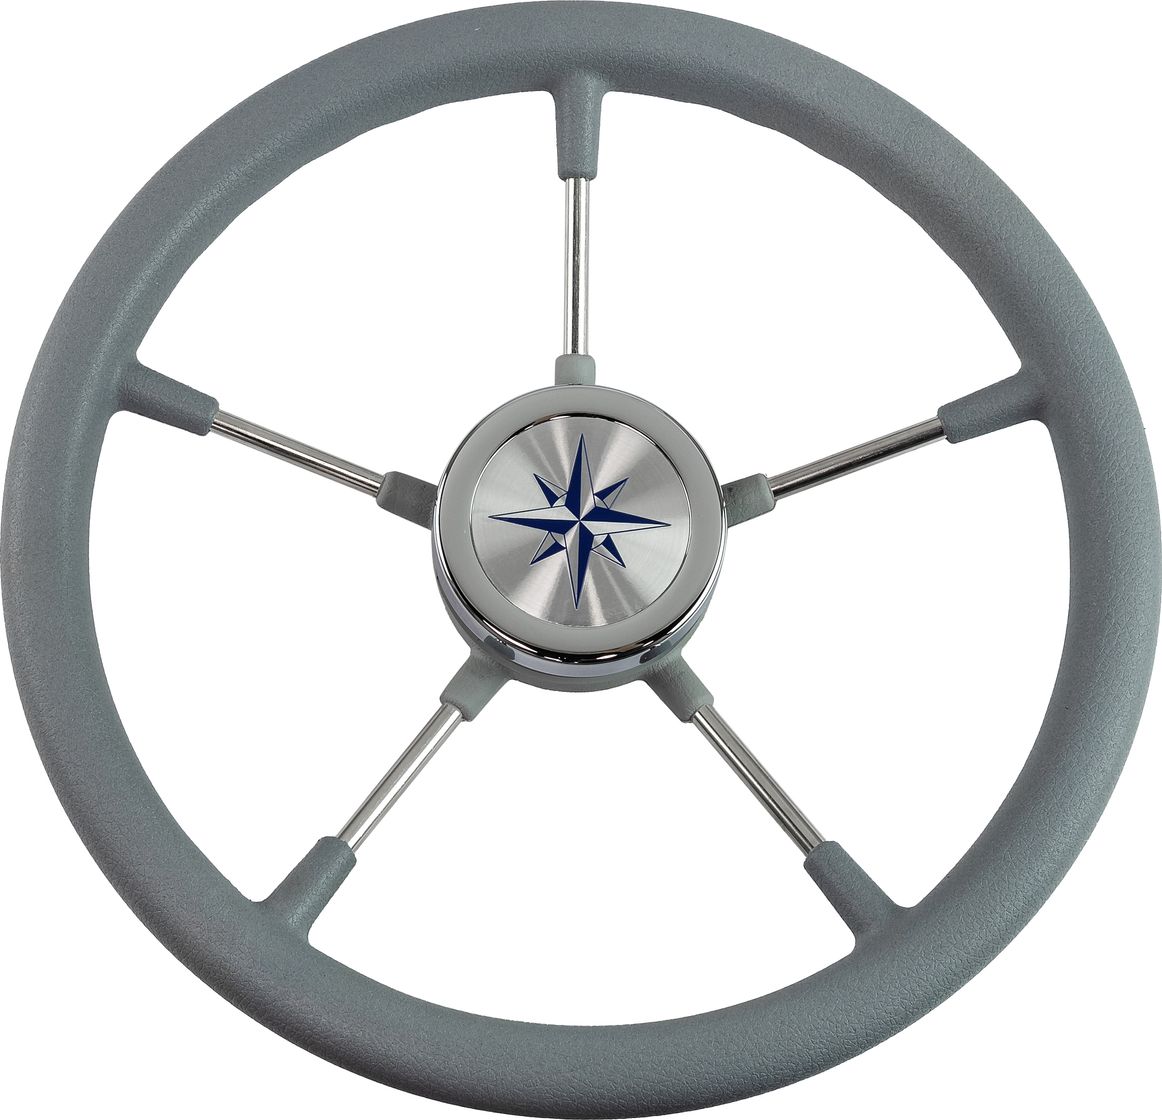 Рулевое колесо RIVA RSL обод серый, спицы серебряные д. 360 мм VN735022-03 рулевое колесо riva rsl обод серый спицы серебряные д 320 мм vn732022 03